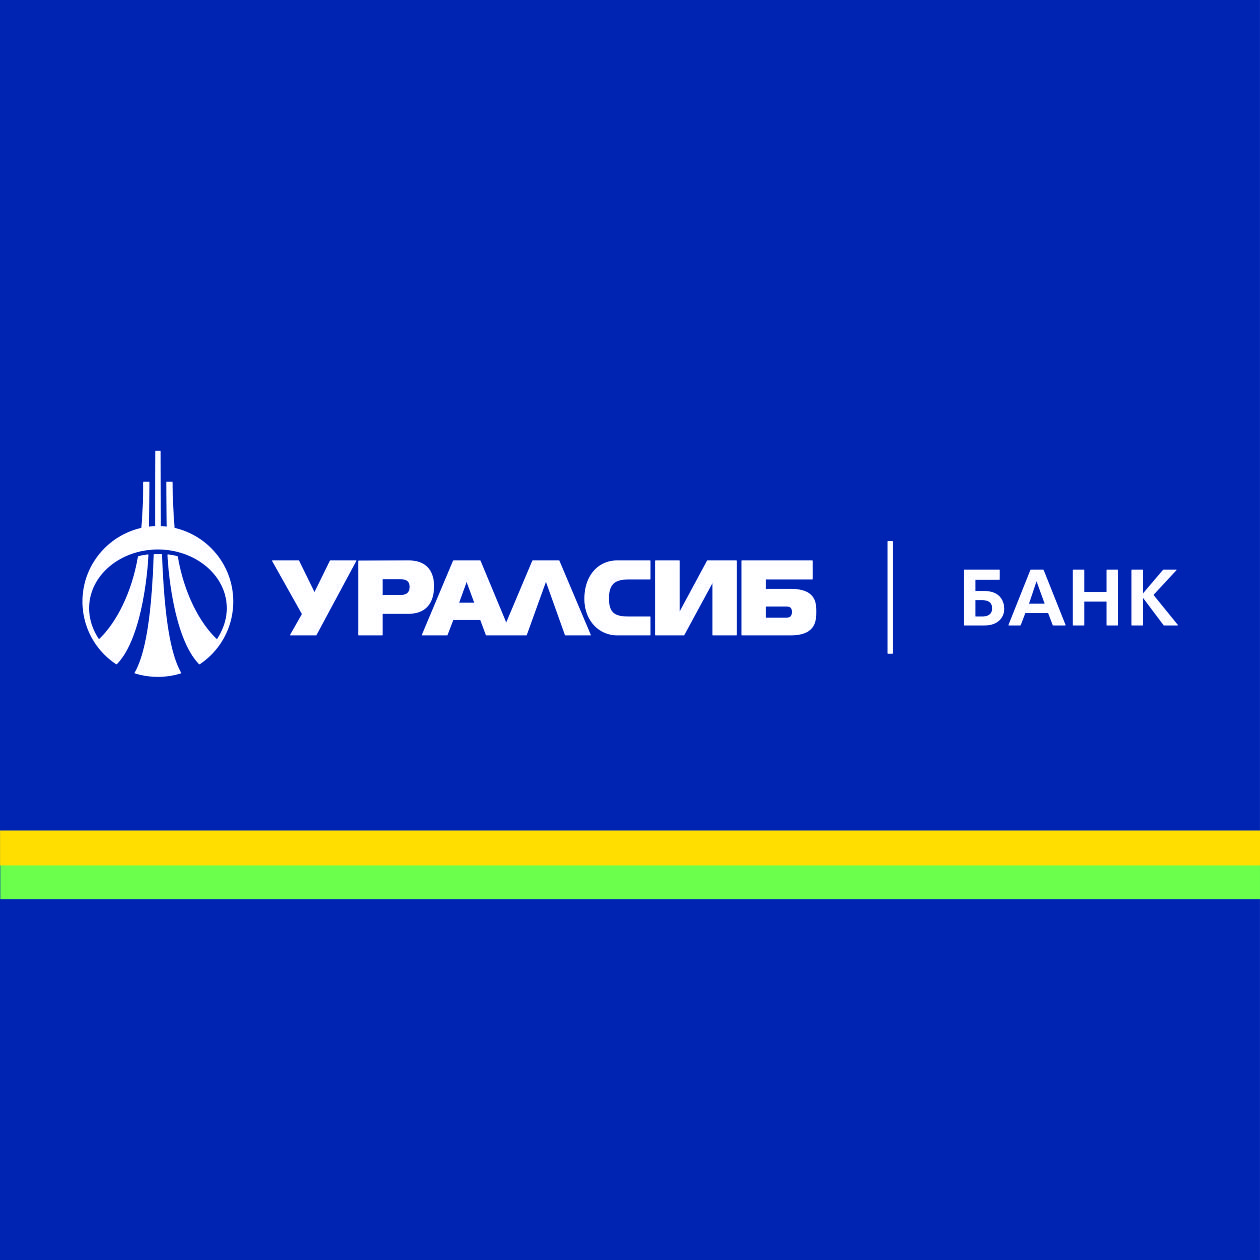 Банк УРАЛСИБ увеличил сумму кредита наличными  без подтверждения дохода до 300 тысяч рублей